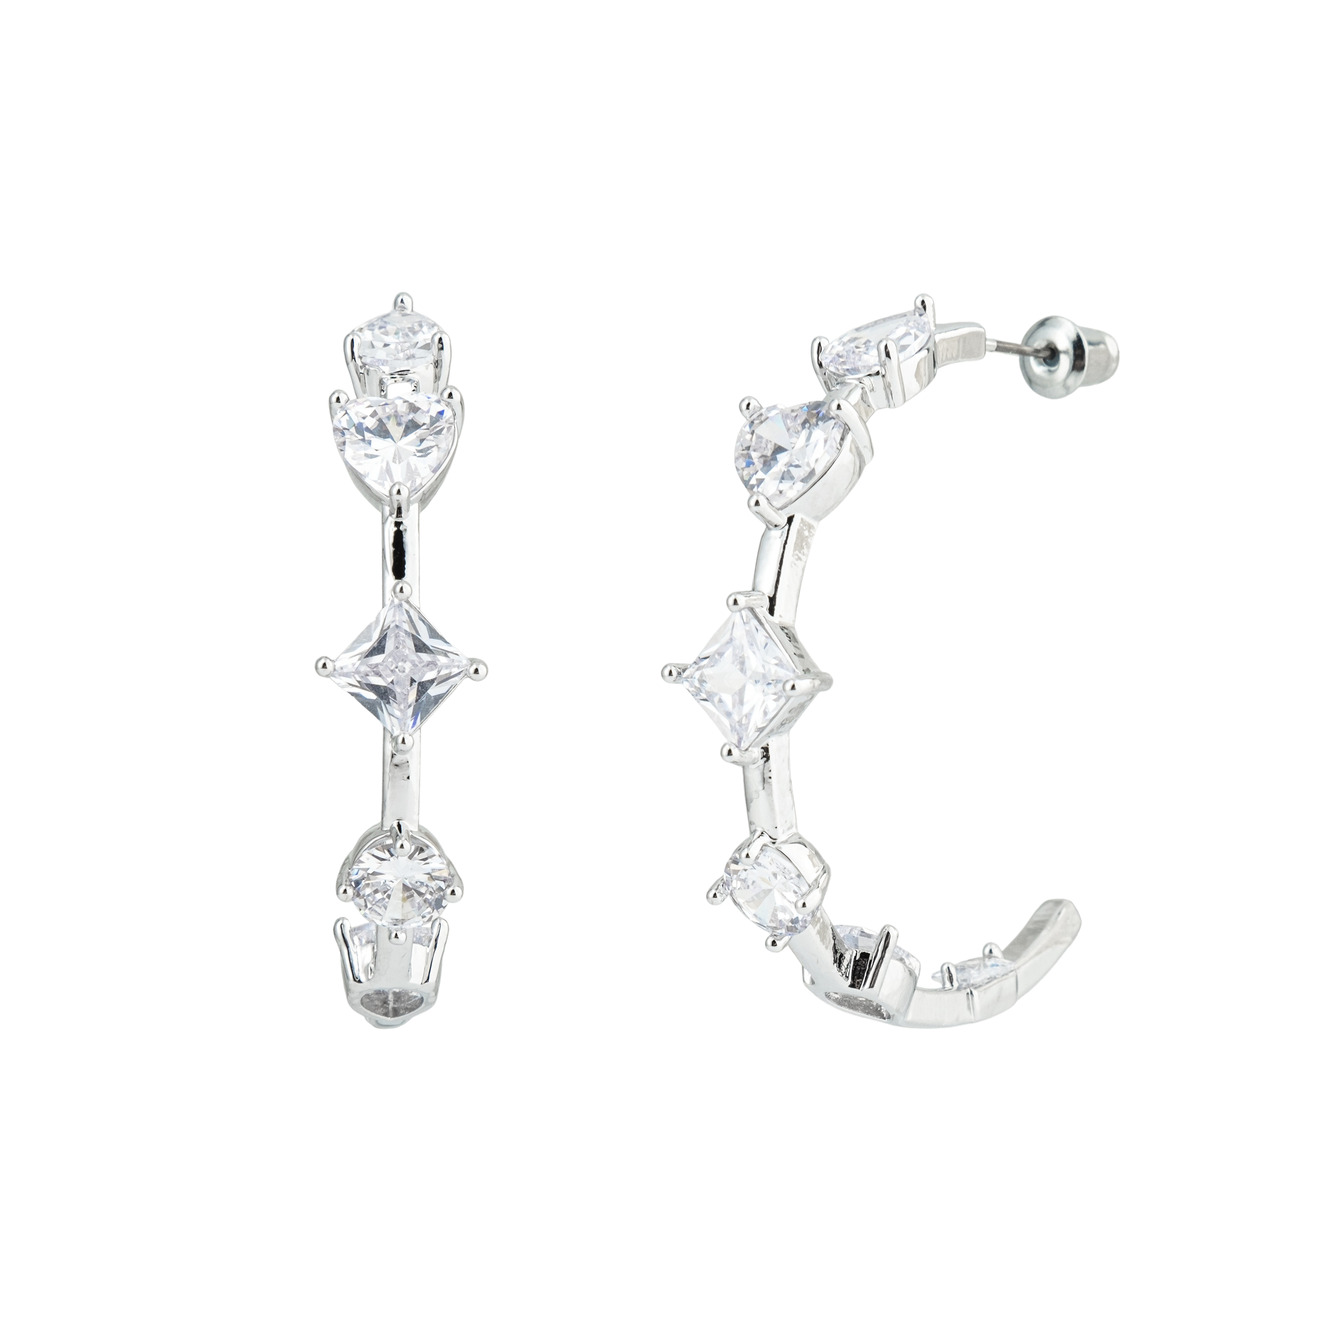 Herald Percy Серебристые серьги-кольца с кристаллами в форме сердца и звезд